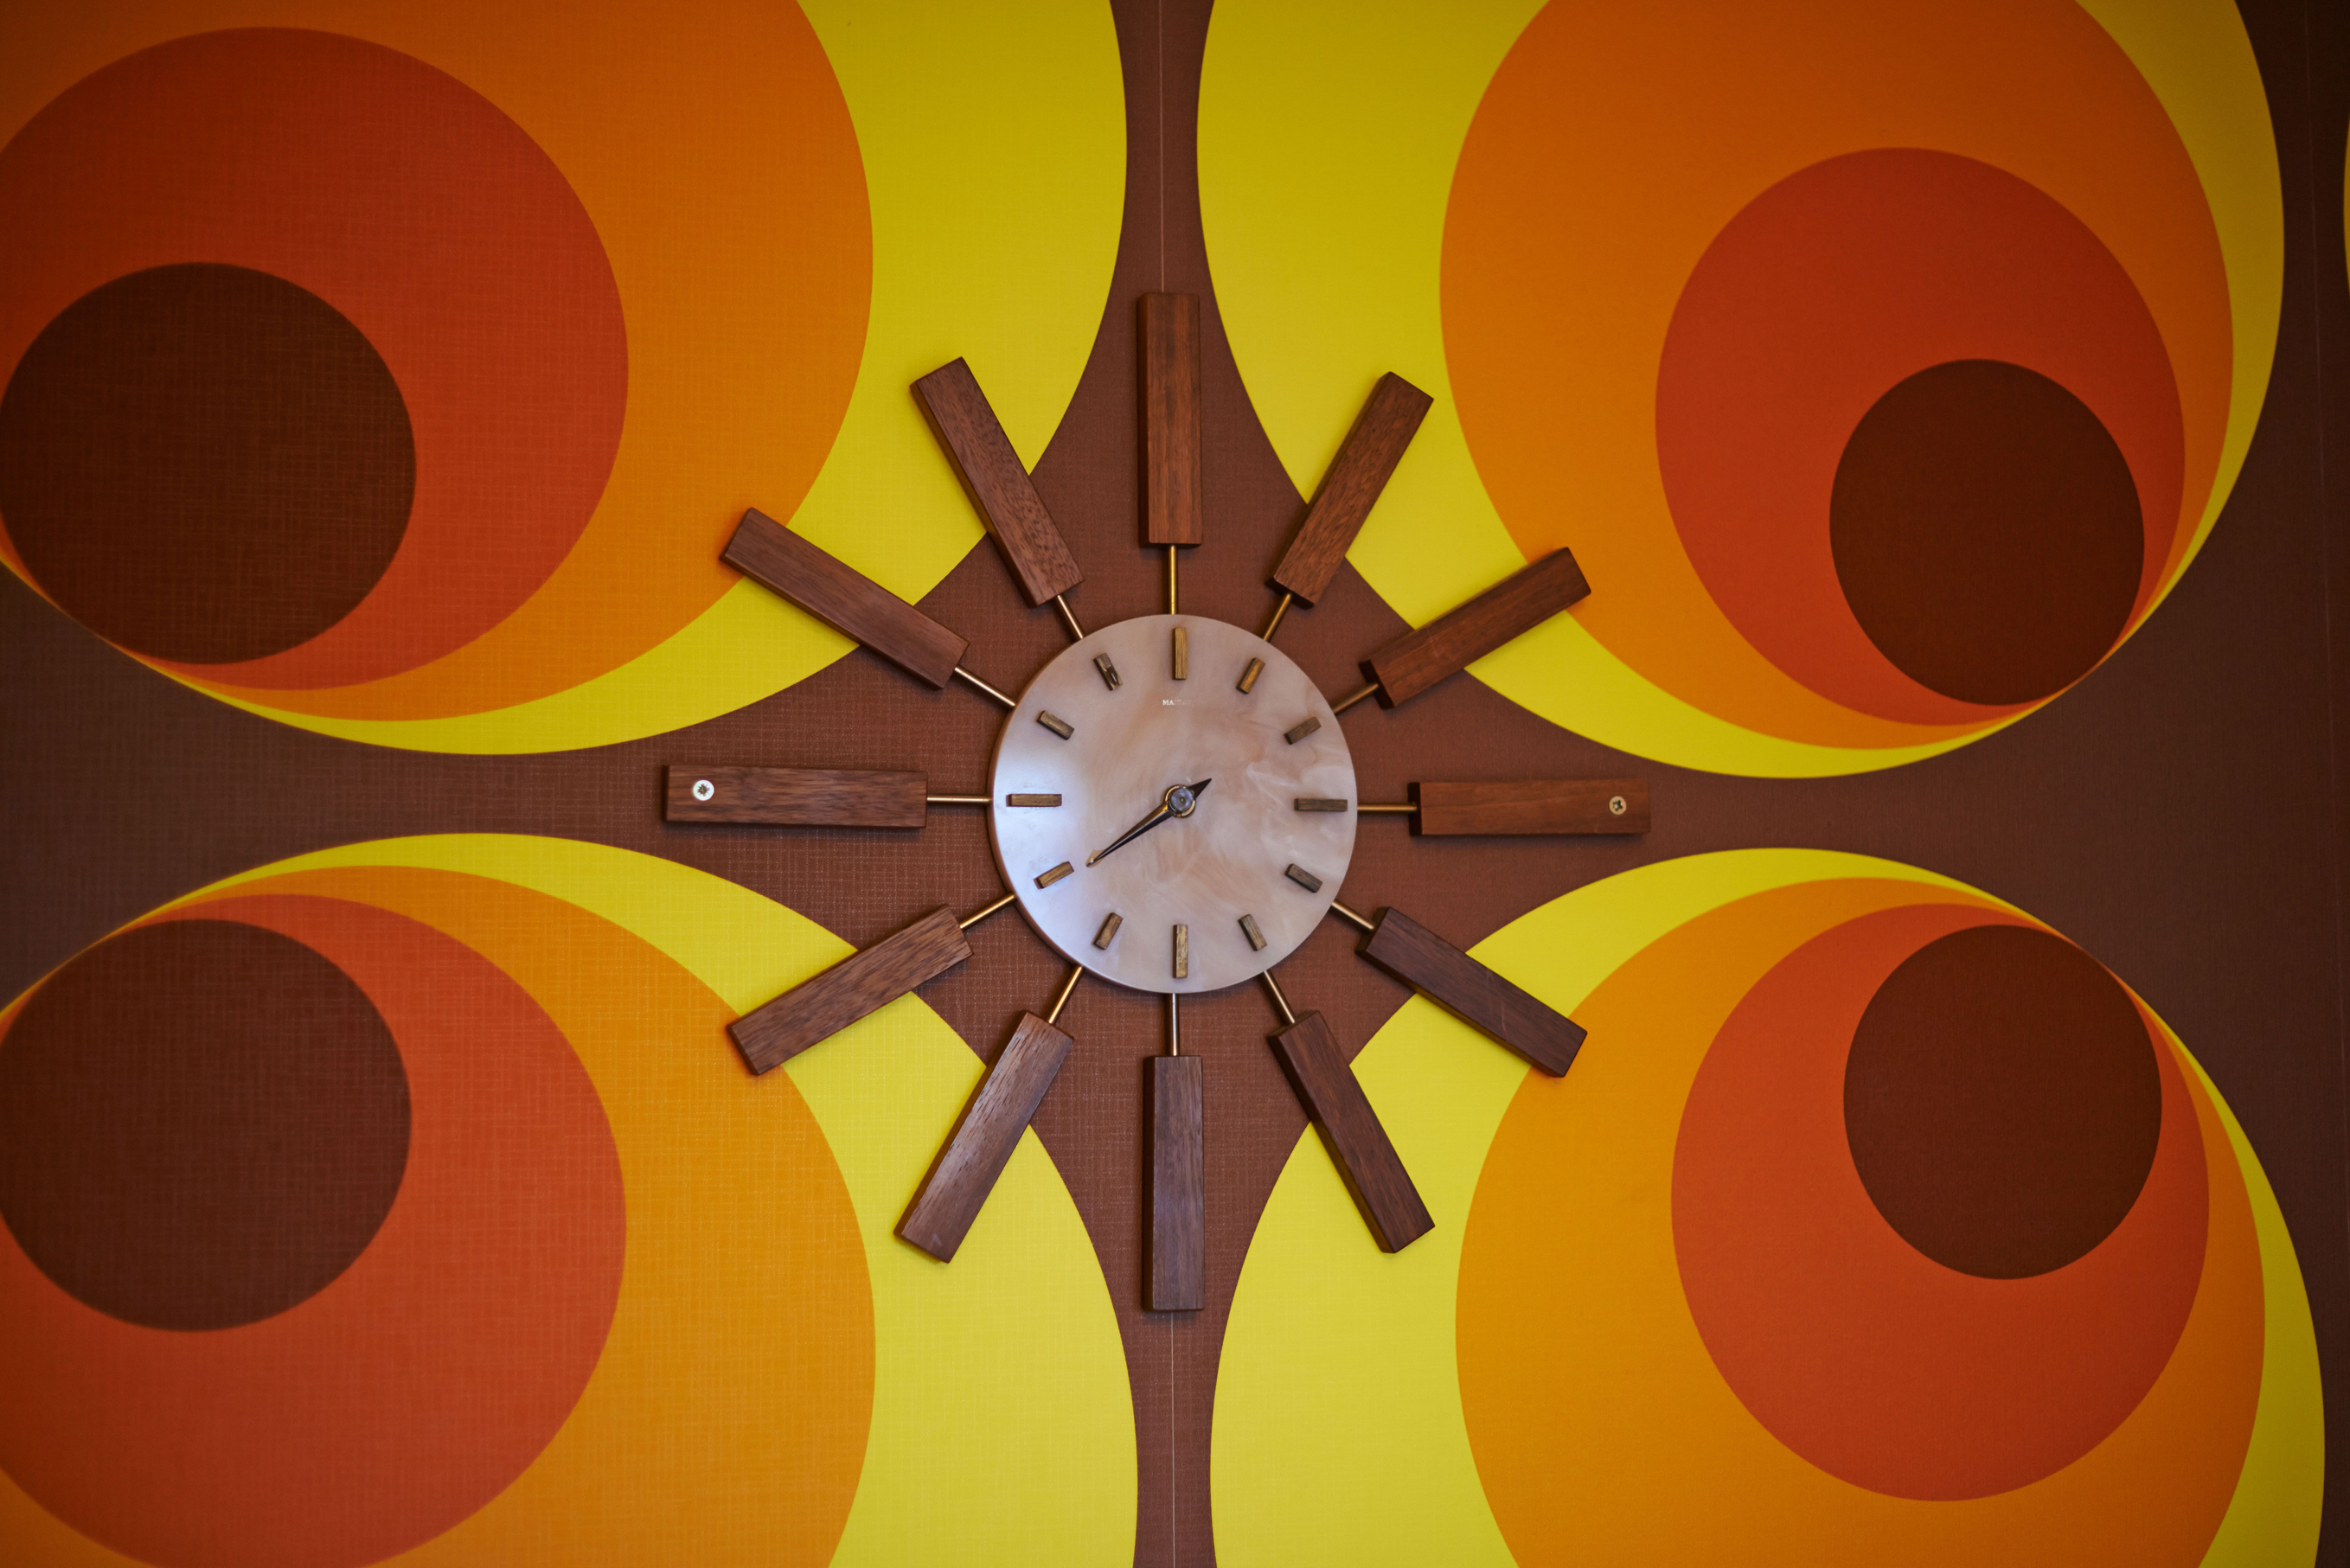 Retro 70s wall clock